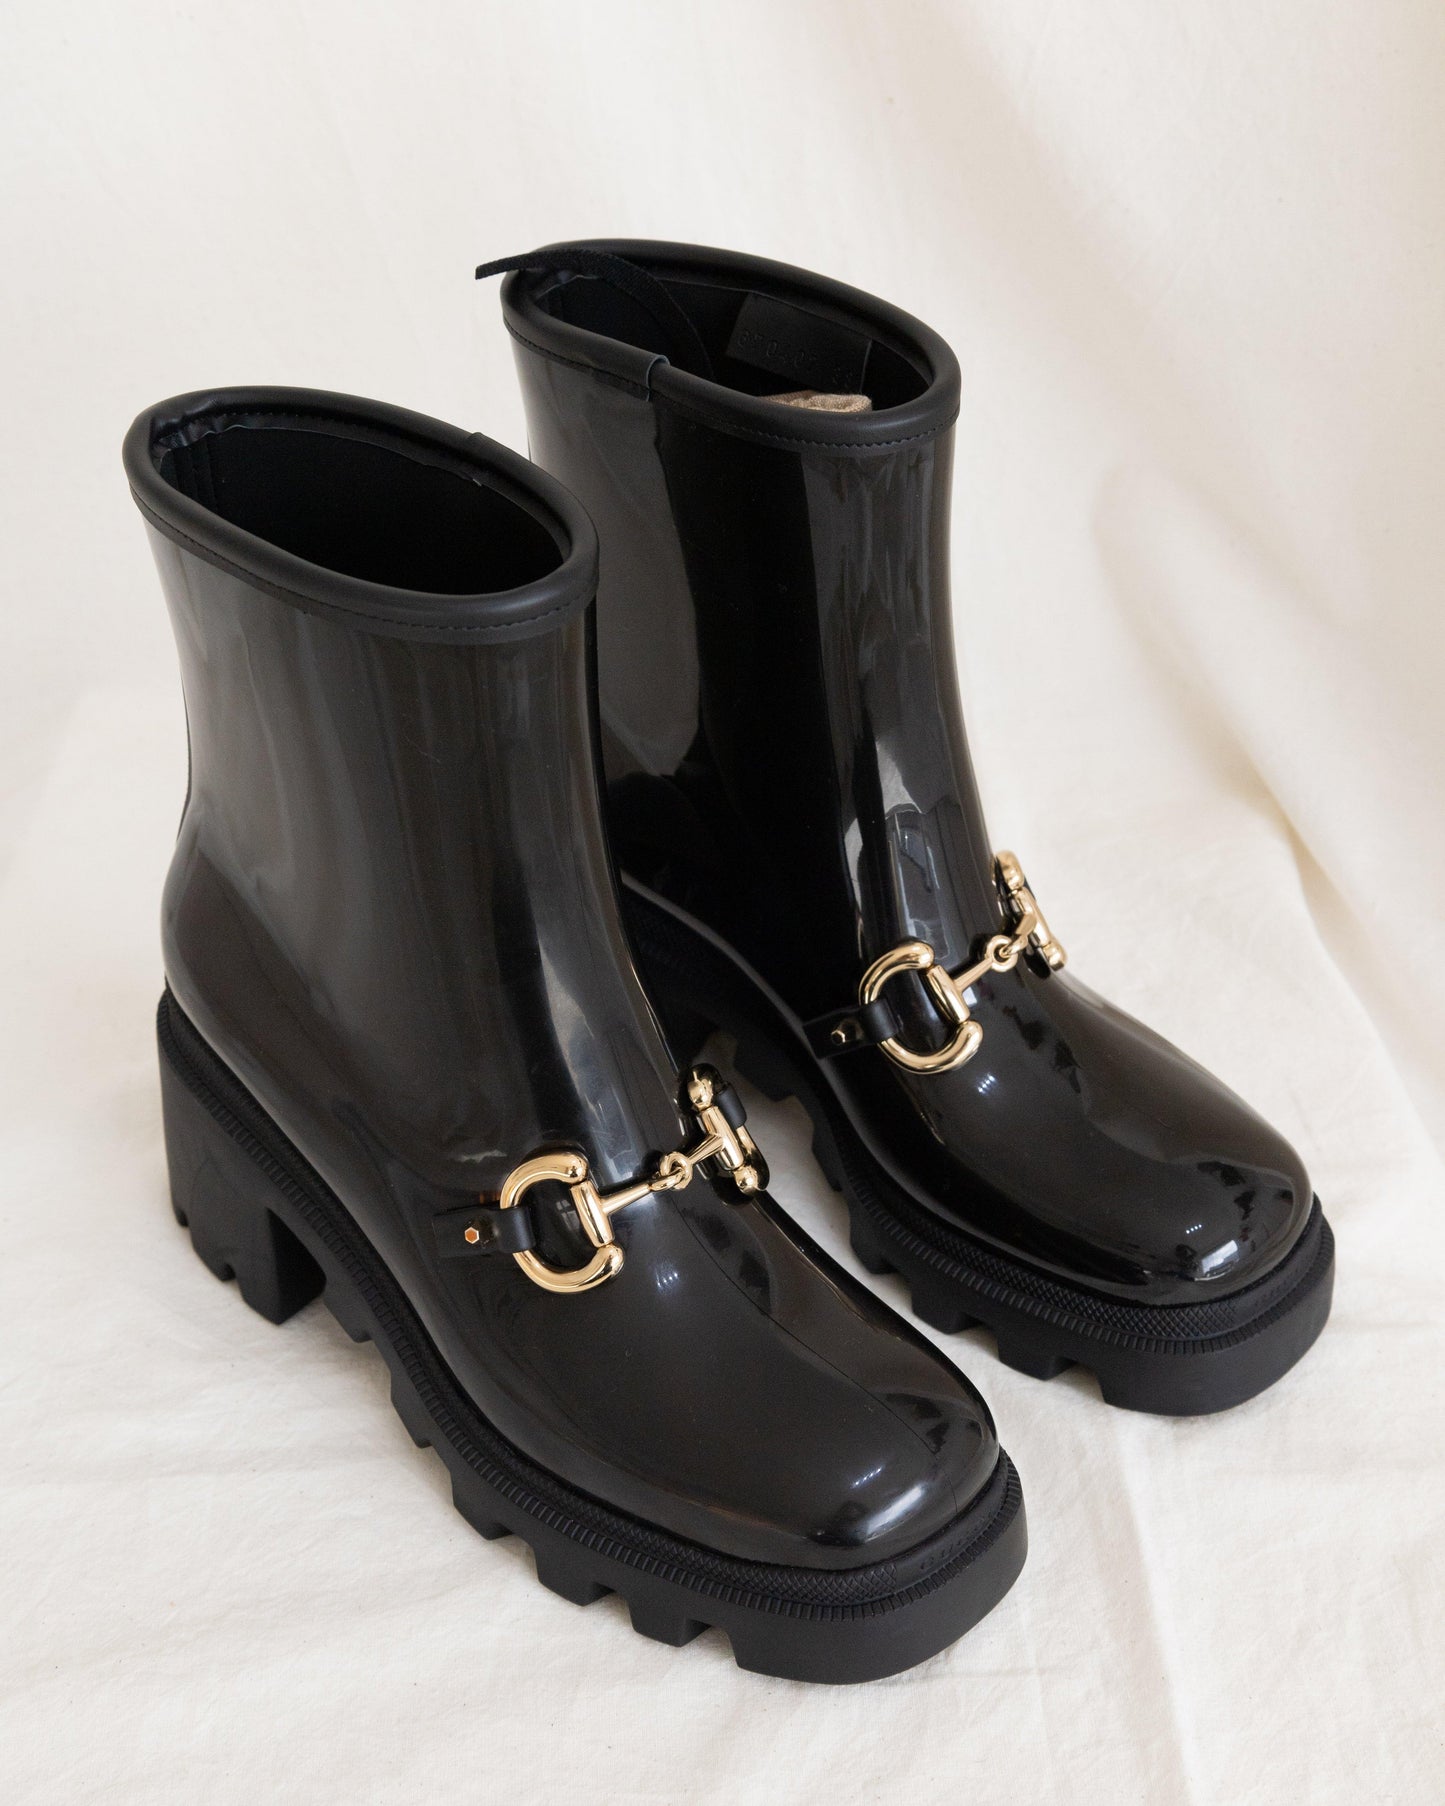 GUCCI Rain Boots 38 - THE VOG CLOSET